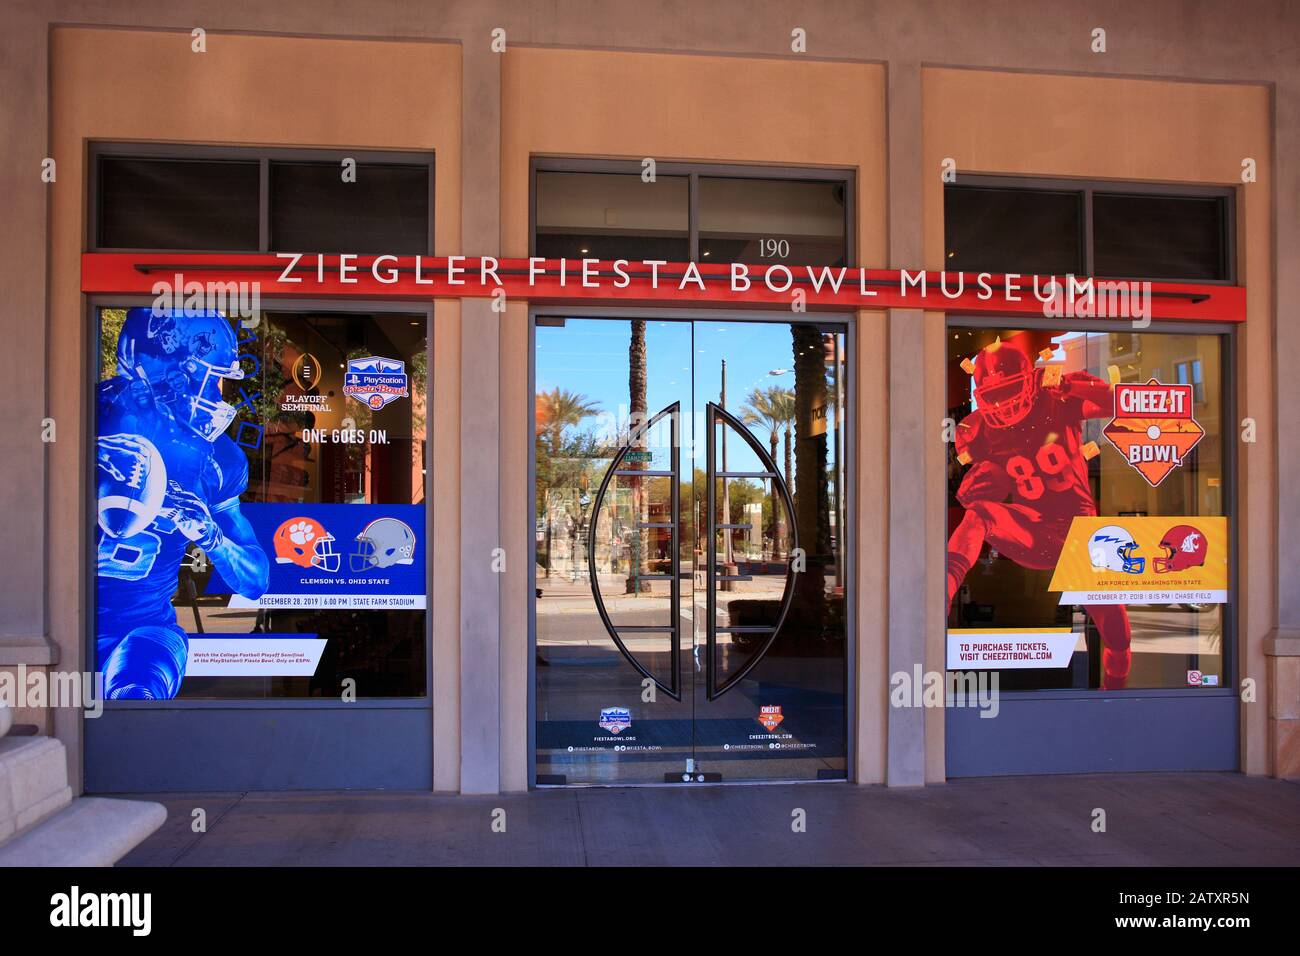 Außerhalb des Ziegler Fiesta Bowl Museums in Scottsdale AZ Stockfoto